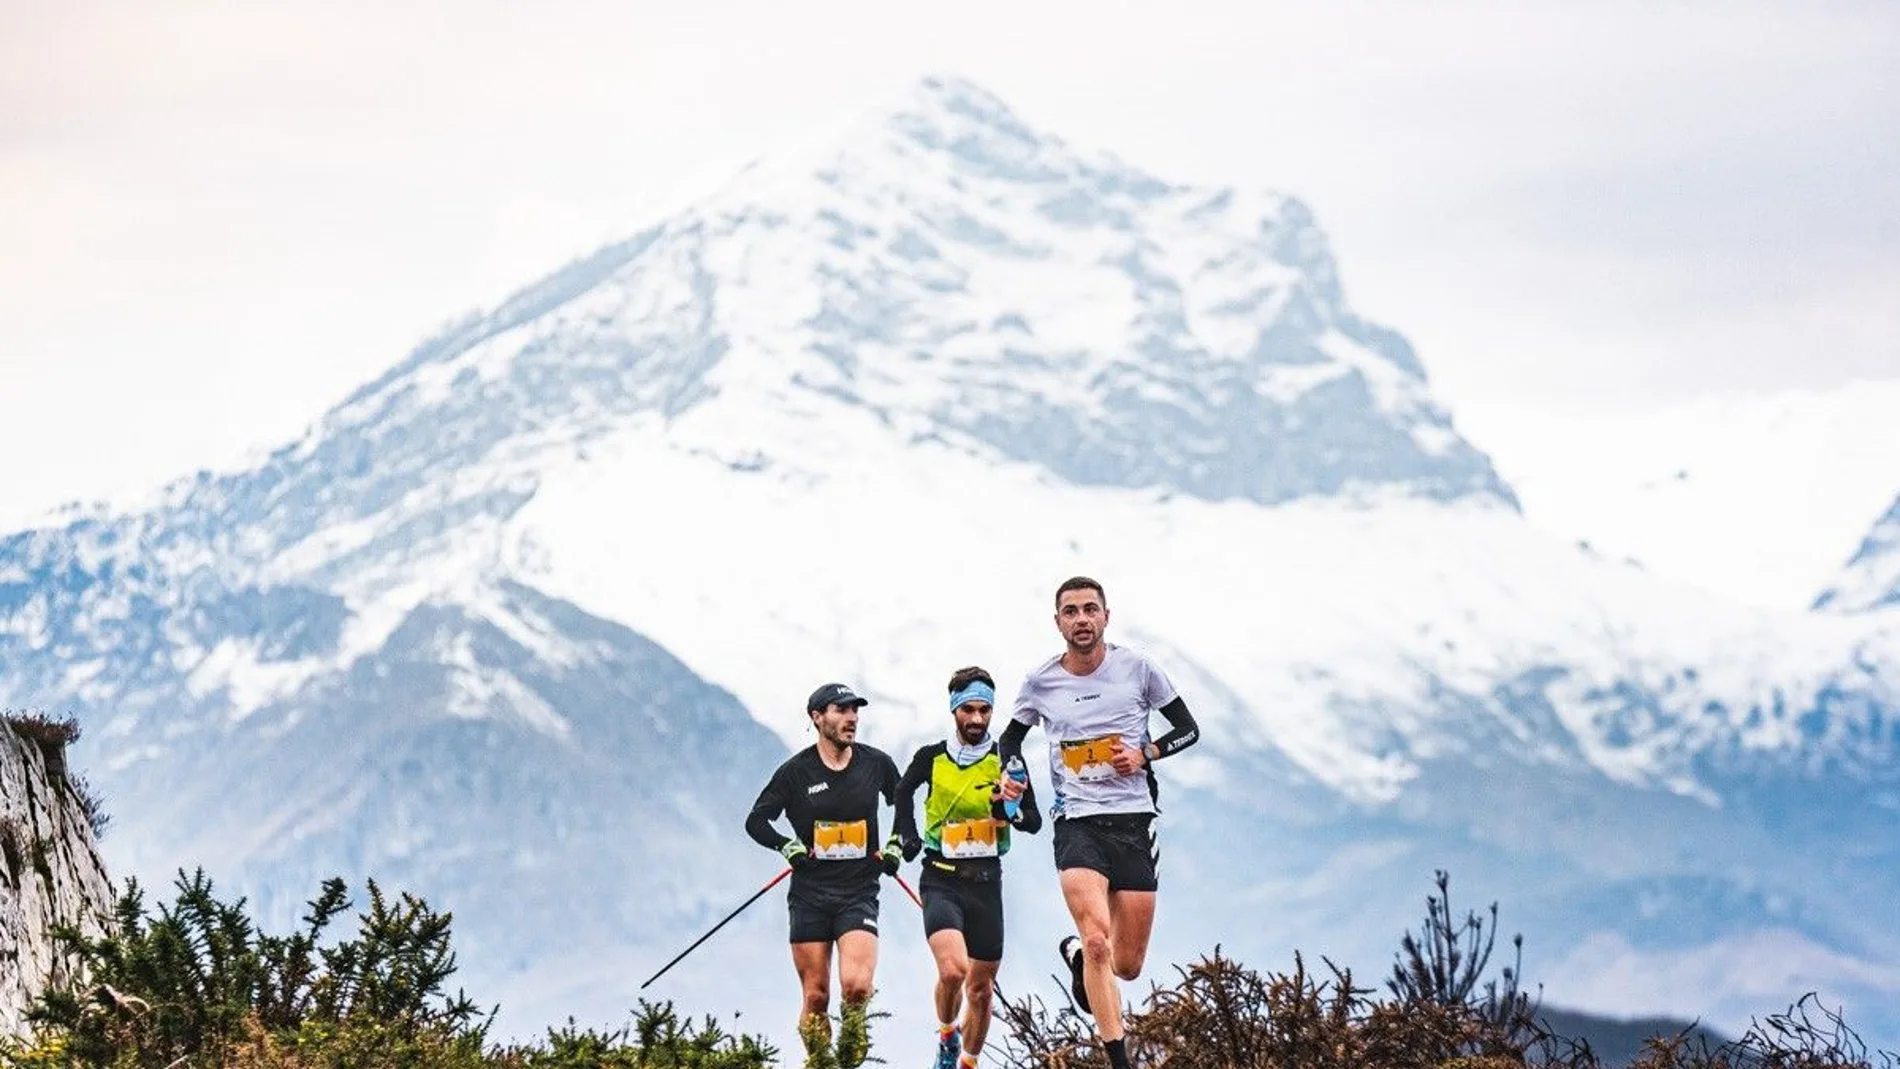 La novena edición de la "Kangas Mountain" bate récord con 1.700 corredores